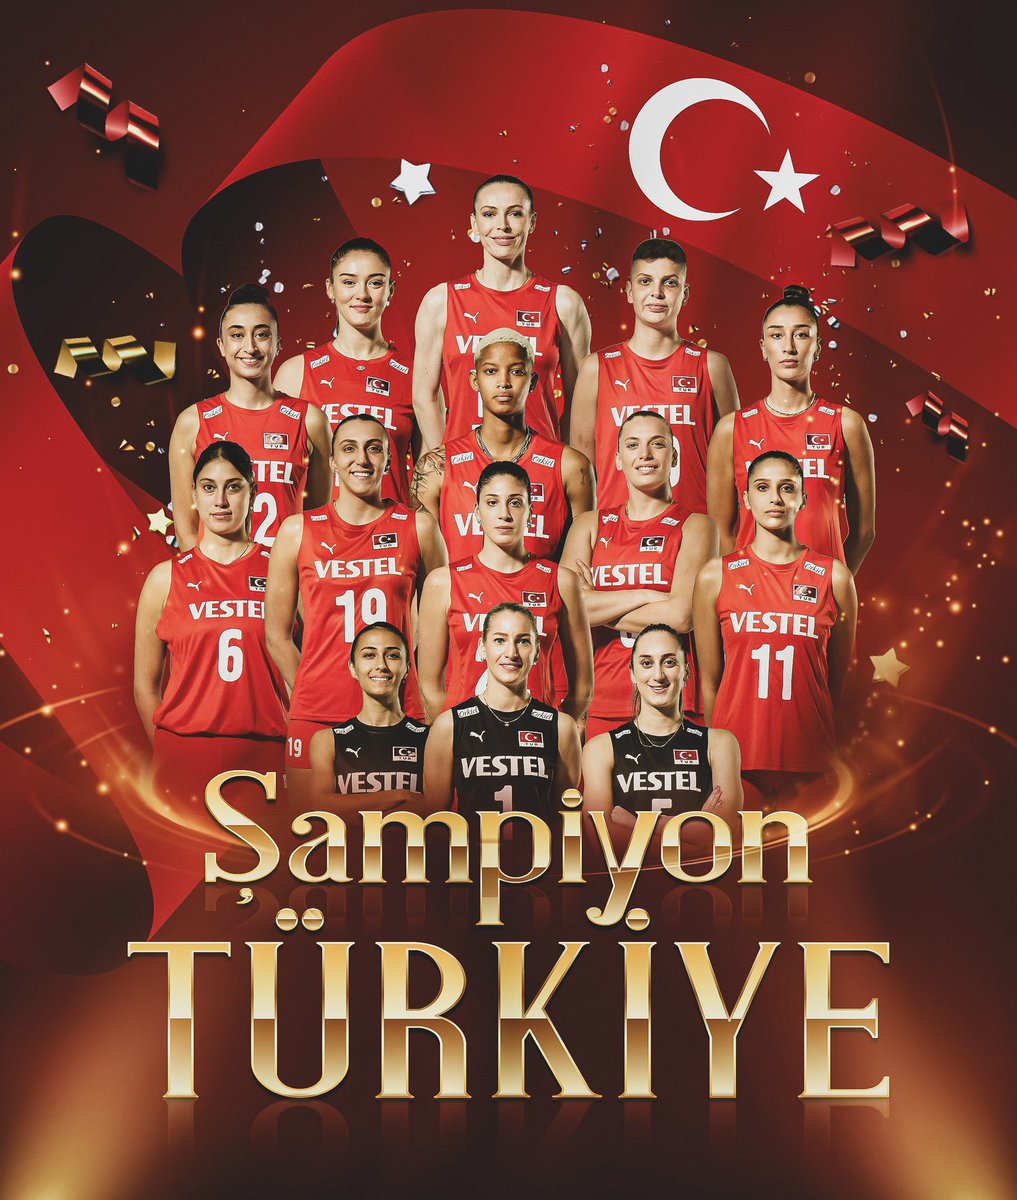 #FileninSultanları gururumuz oldu bir kez daha. Kupa Türkiye’mize çok yakıştı. #ŞampiyonTürkiye 🇹🇷